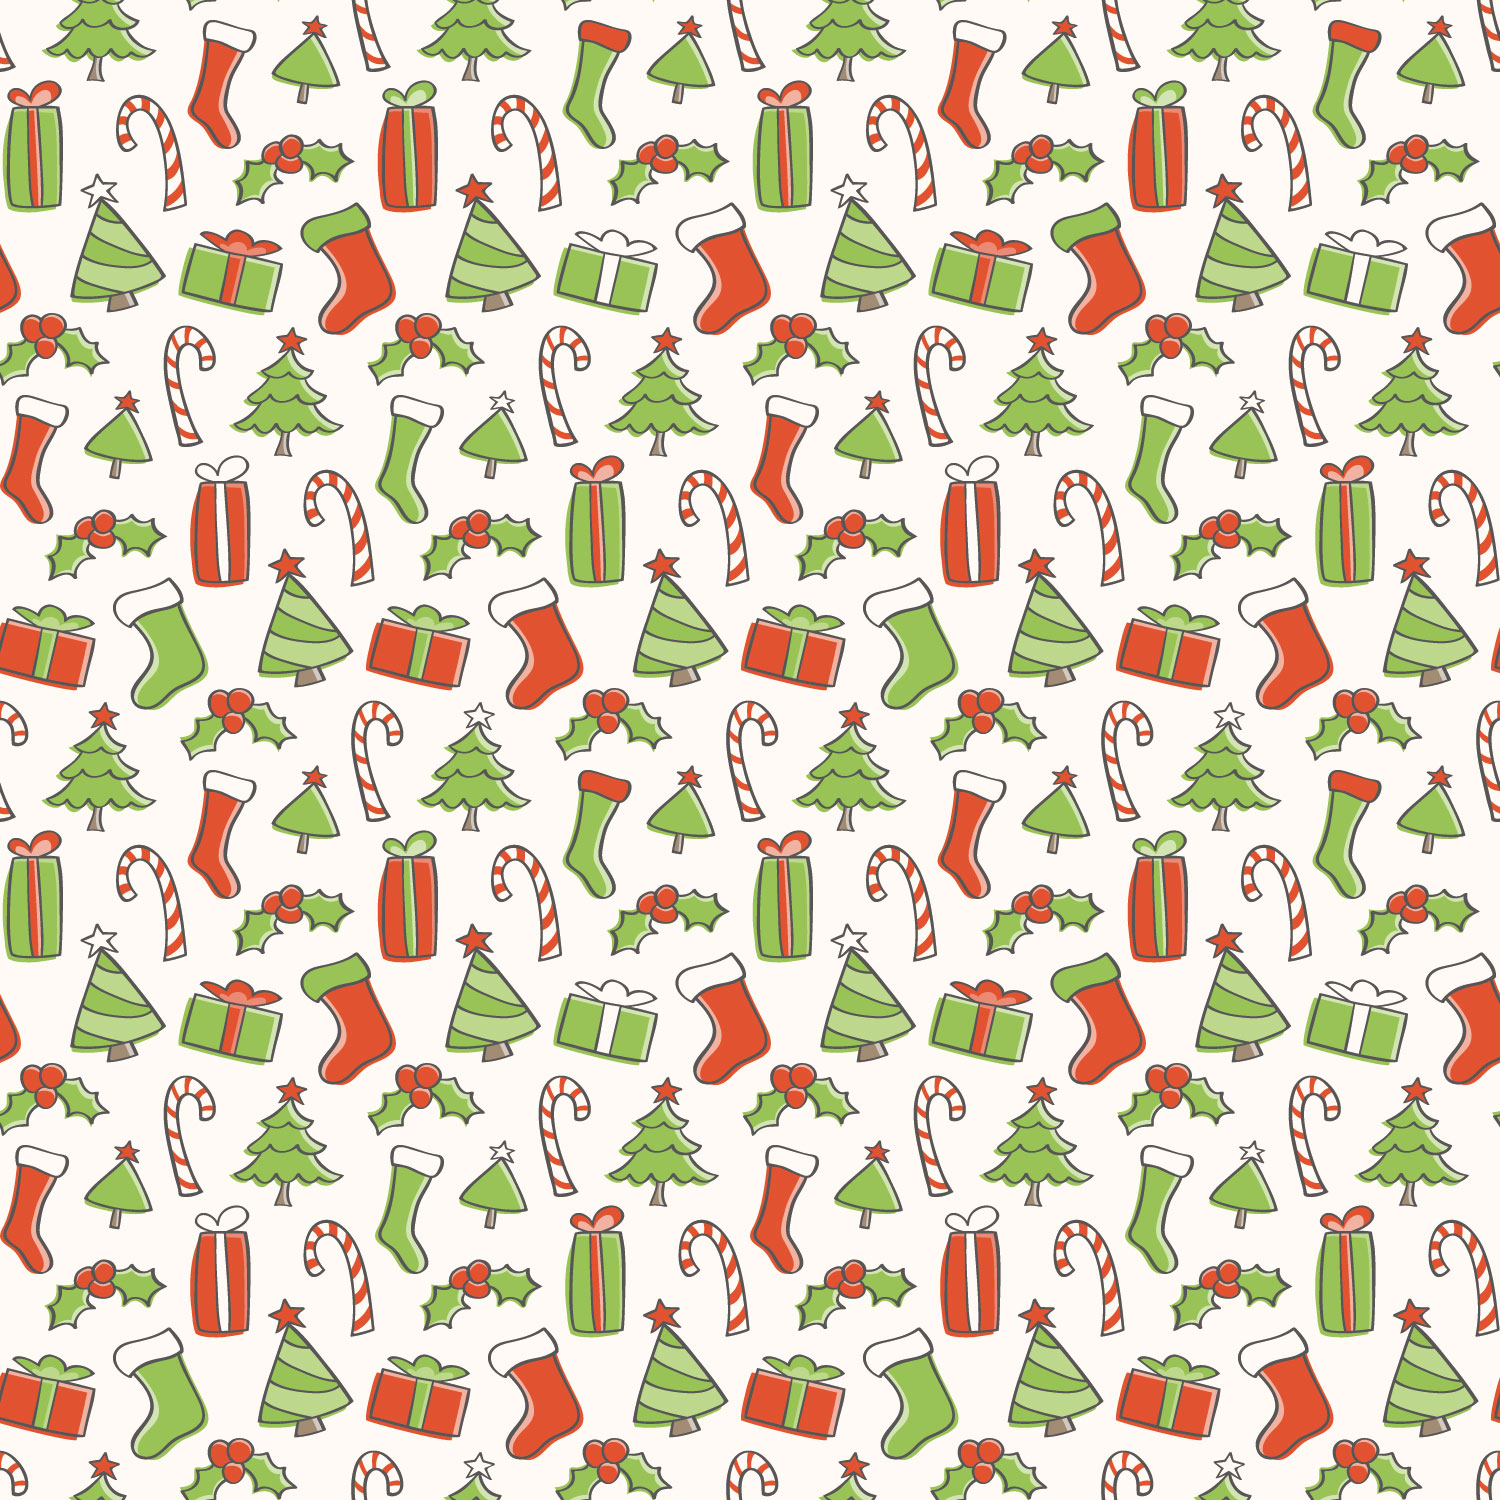 クリスマスのイラストno 224 壁紙 ツリーと小物 無料のフリー素材集 花鳥風月